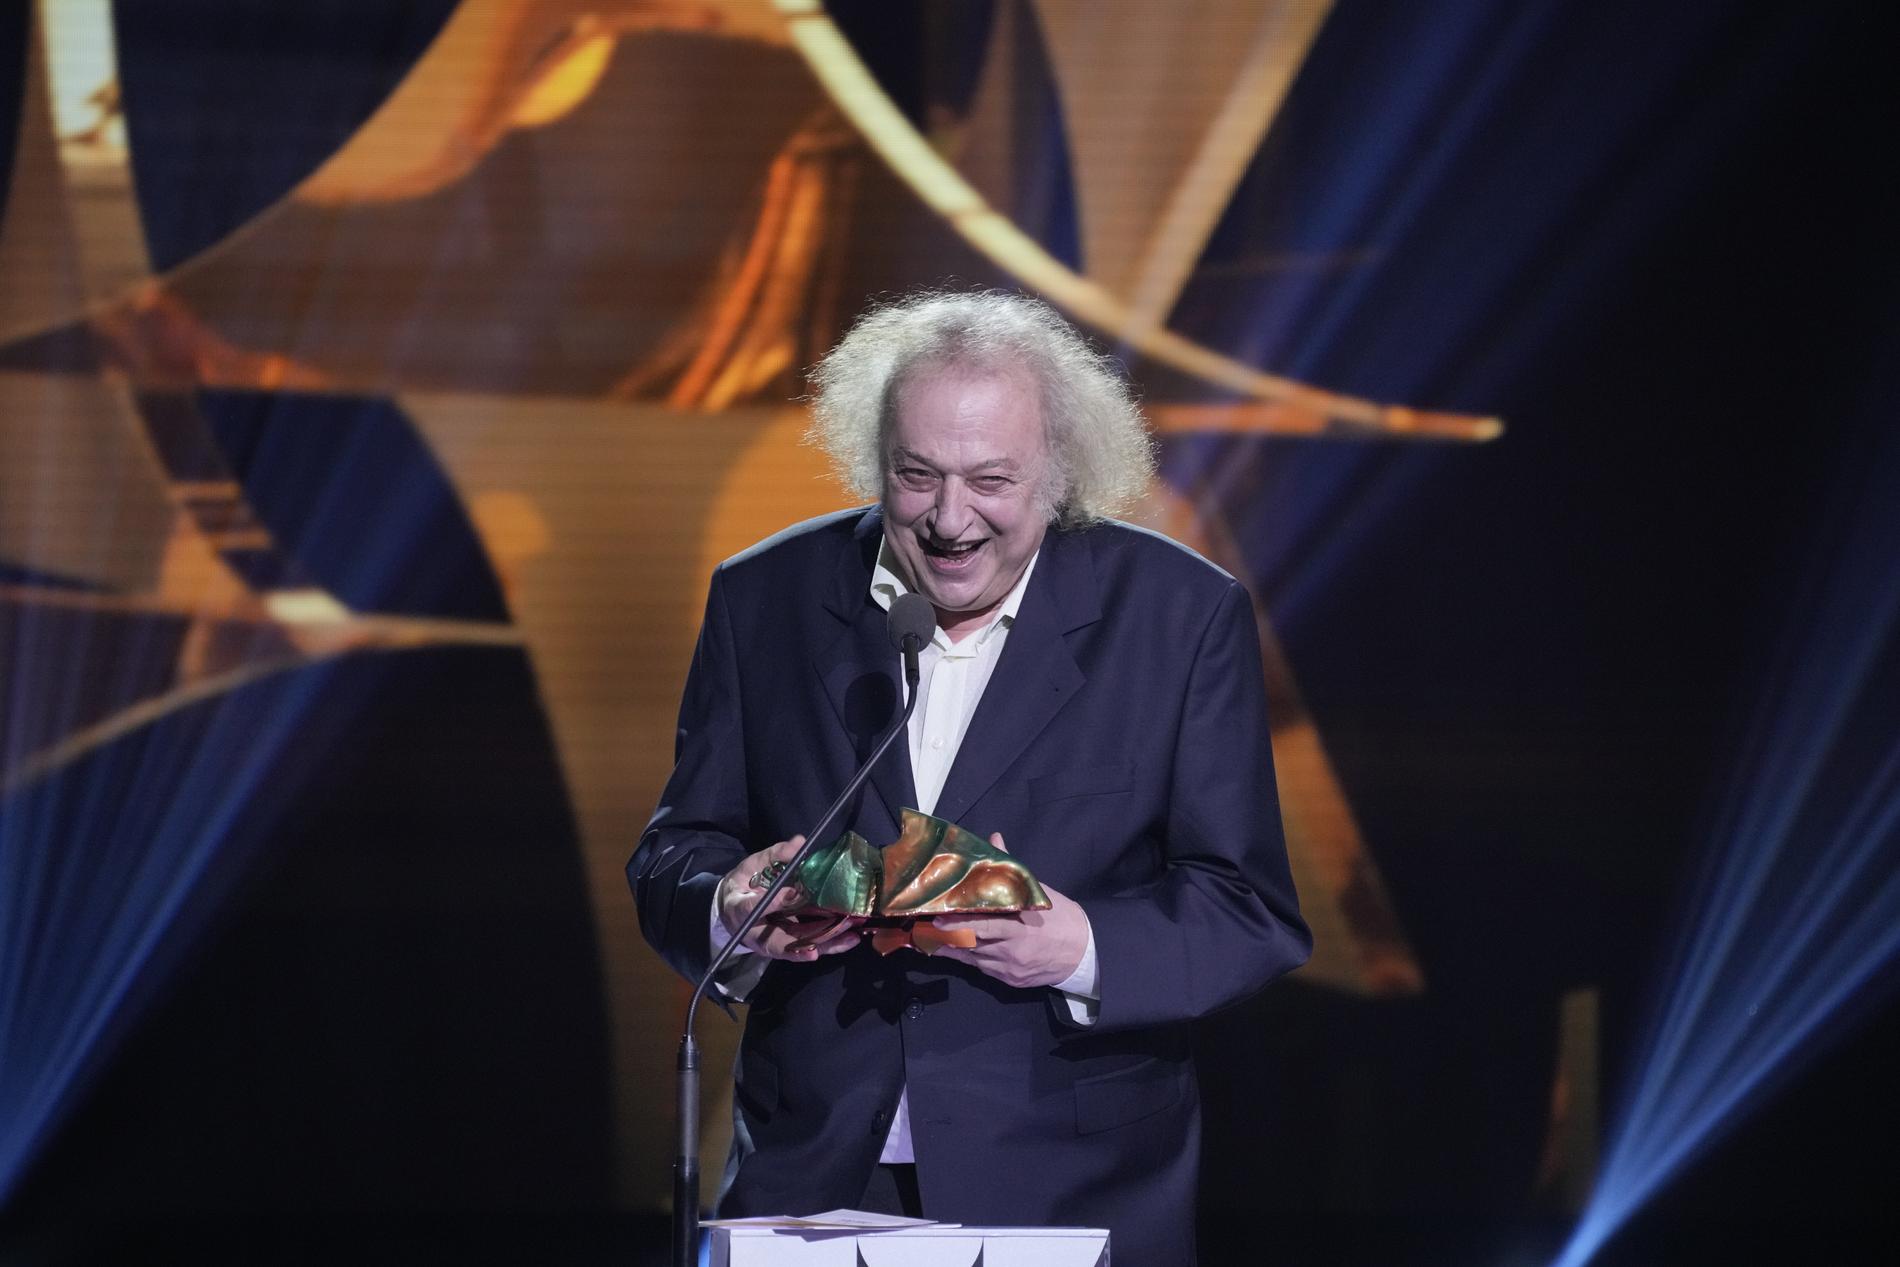 Zlatko Buric vann en guldbagge för sin roll i Östlunds ”Triangle of sadness”